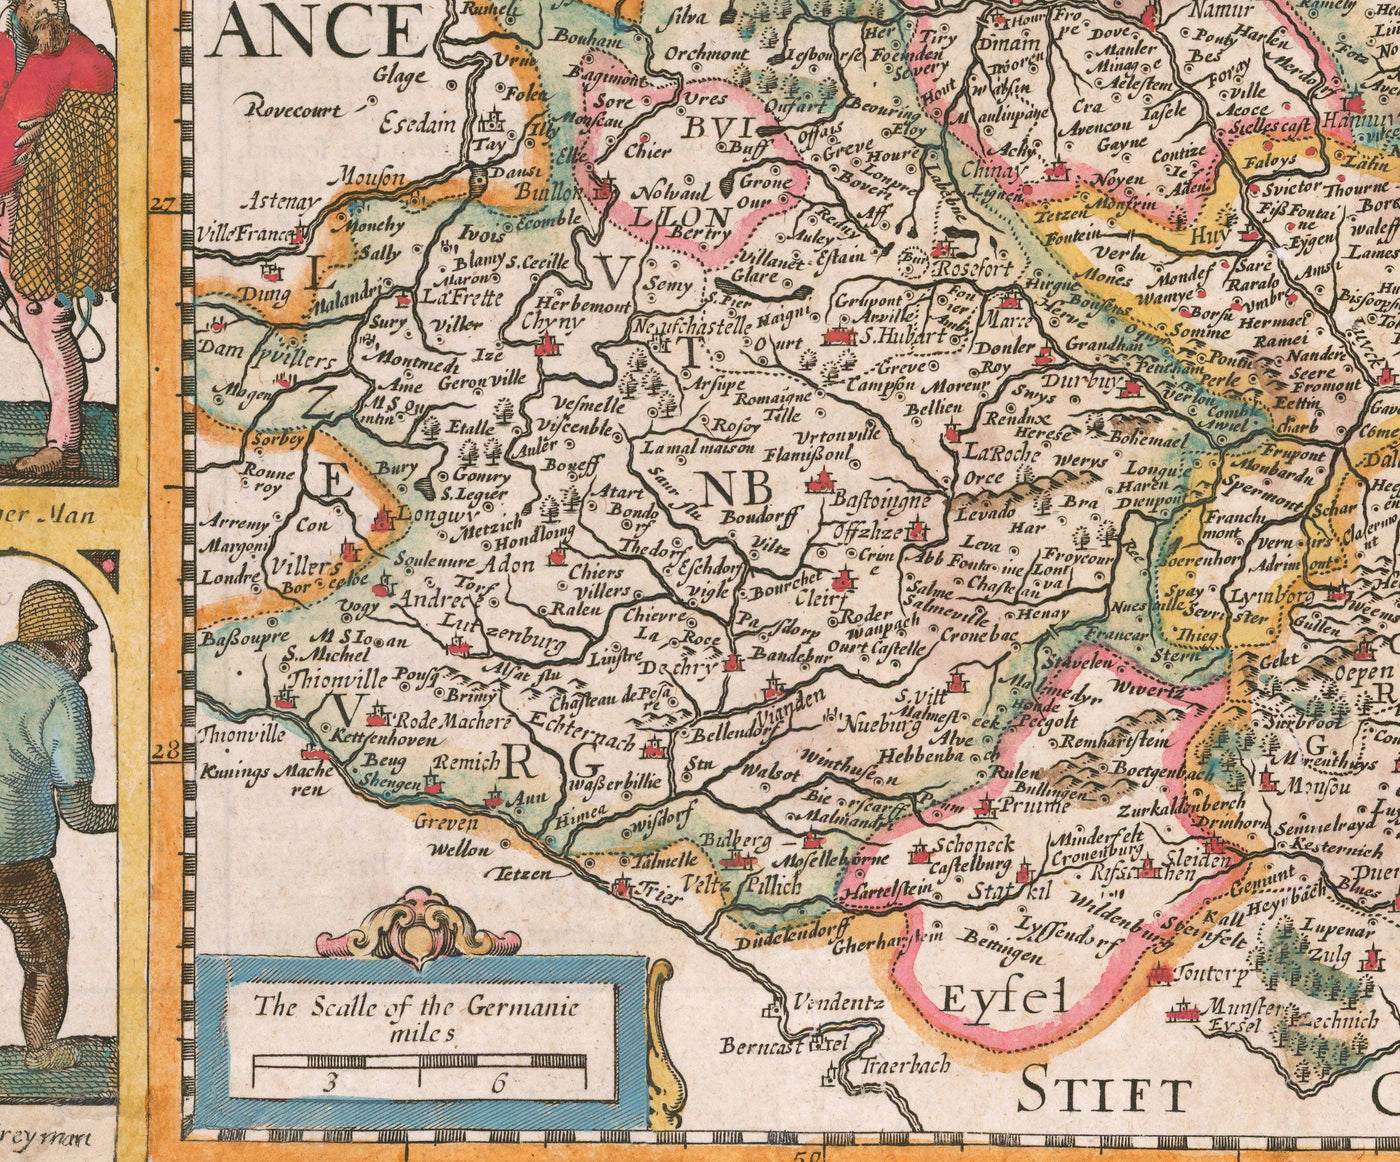 Ancienne carte des pays bas de John Speed, 1627 - Pays-Bas, Pays-Bas, Belgique, Luxembourg, Flandre, Belgique